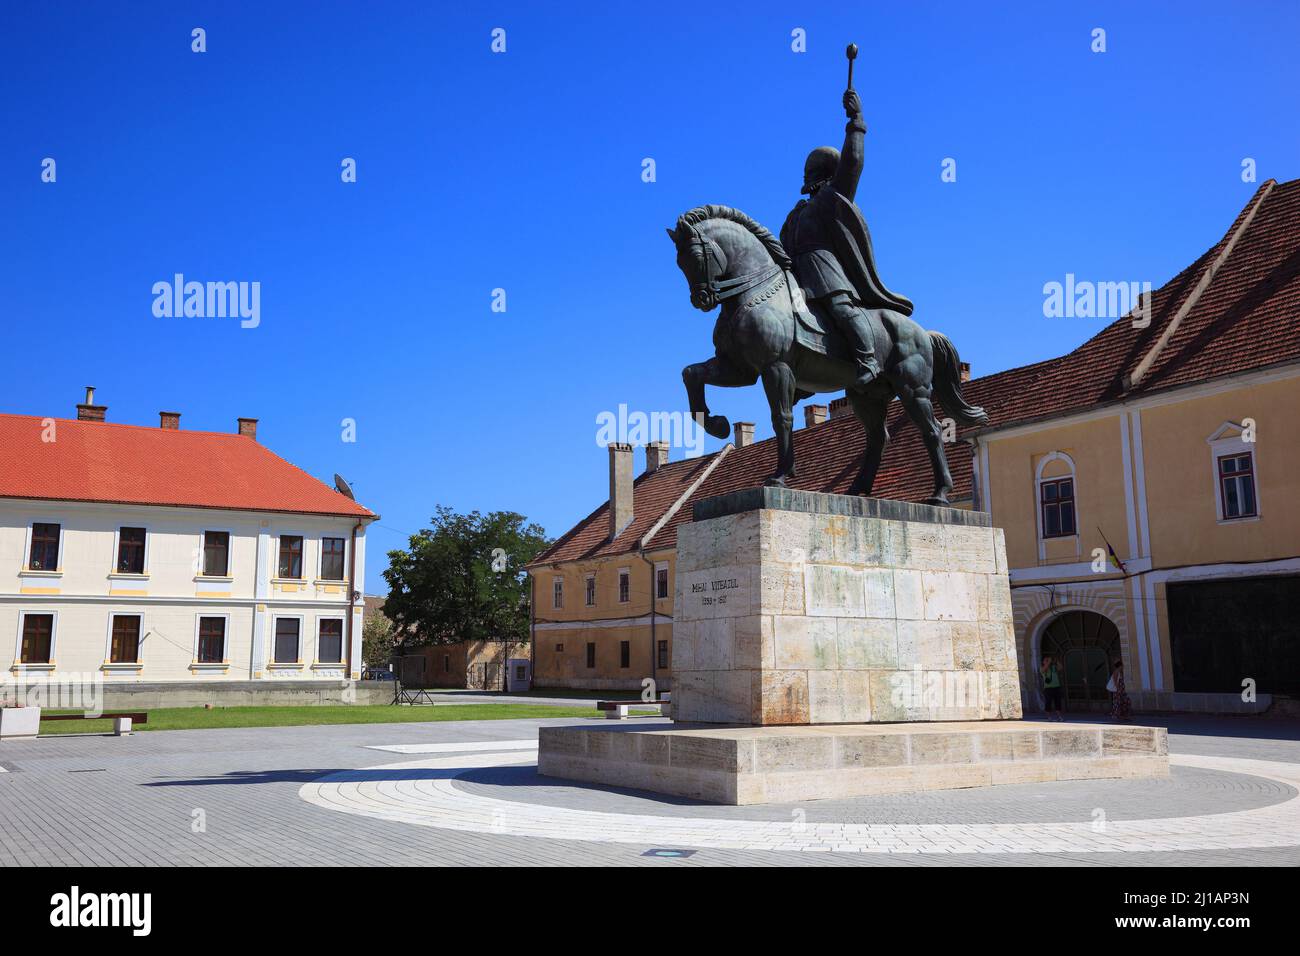 Reiterstandbild von Mihai Viteazul, Michael der Tapfere, Nationalheld in der Historische Festung, Alba Iulia, Balgrad, deutsch Karlsburg, ist die Haup Stock Photo